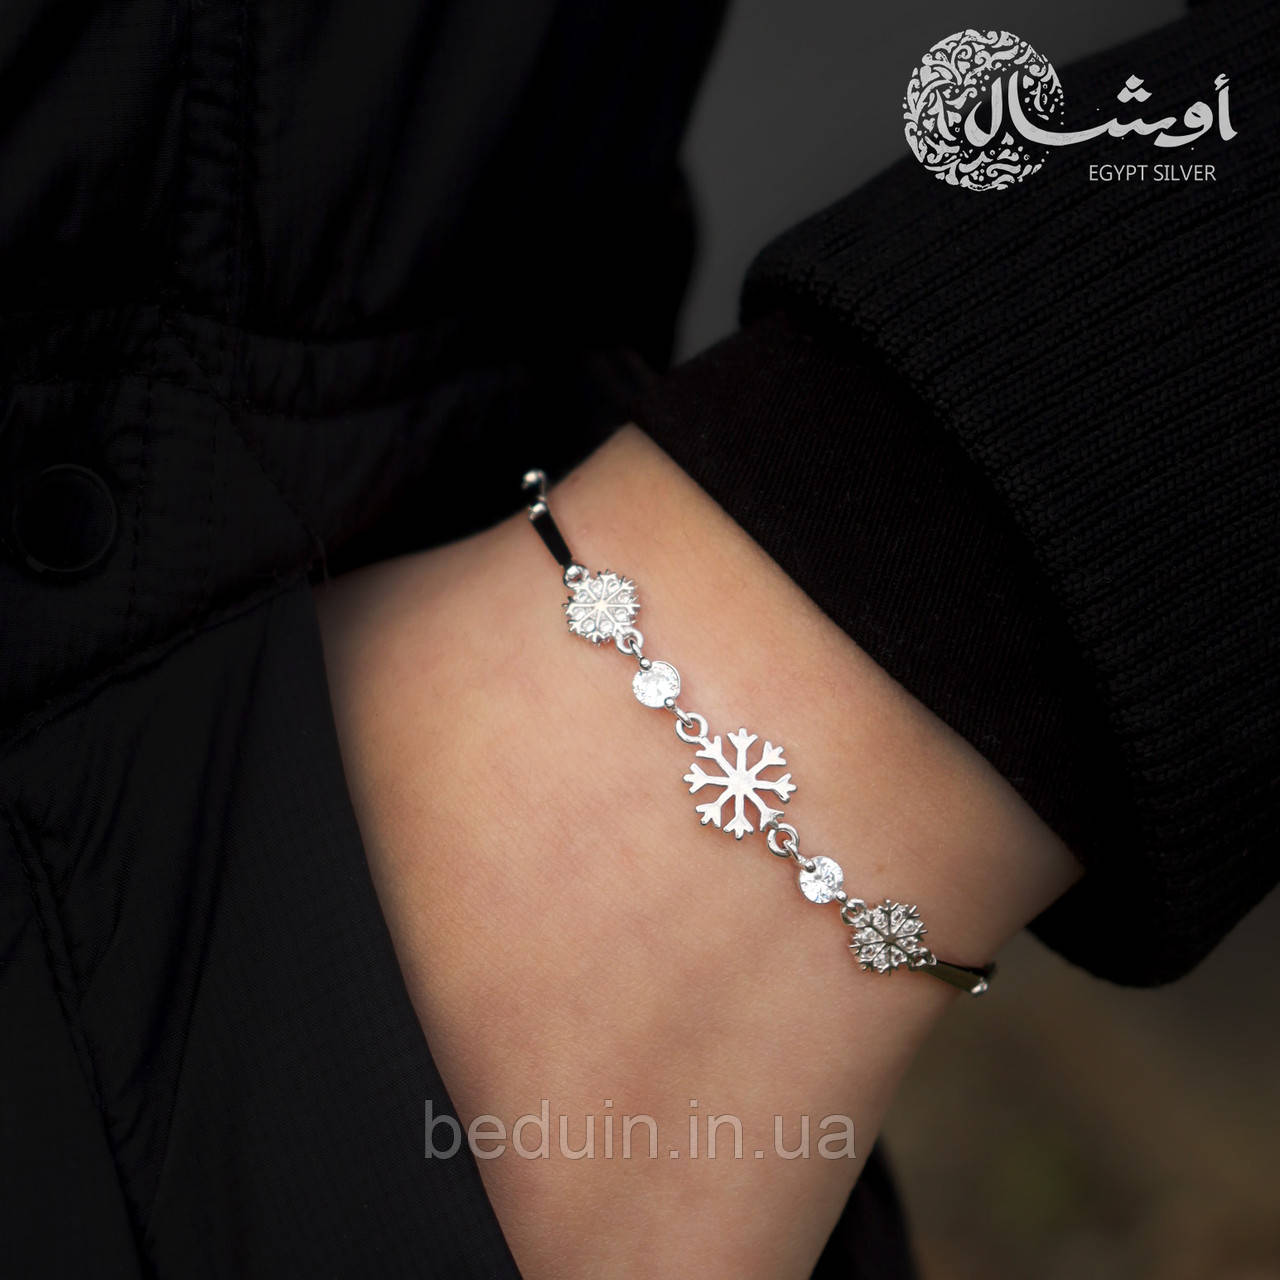 Срібний браслет зі вставками циркону "Сніжинка" — EGYPT SILVER, фото 1